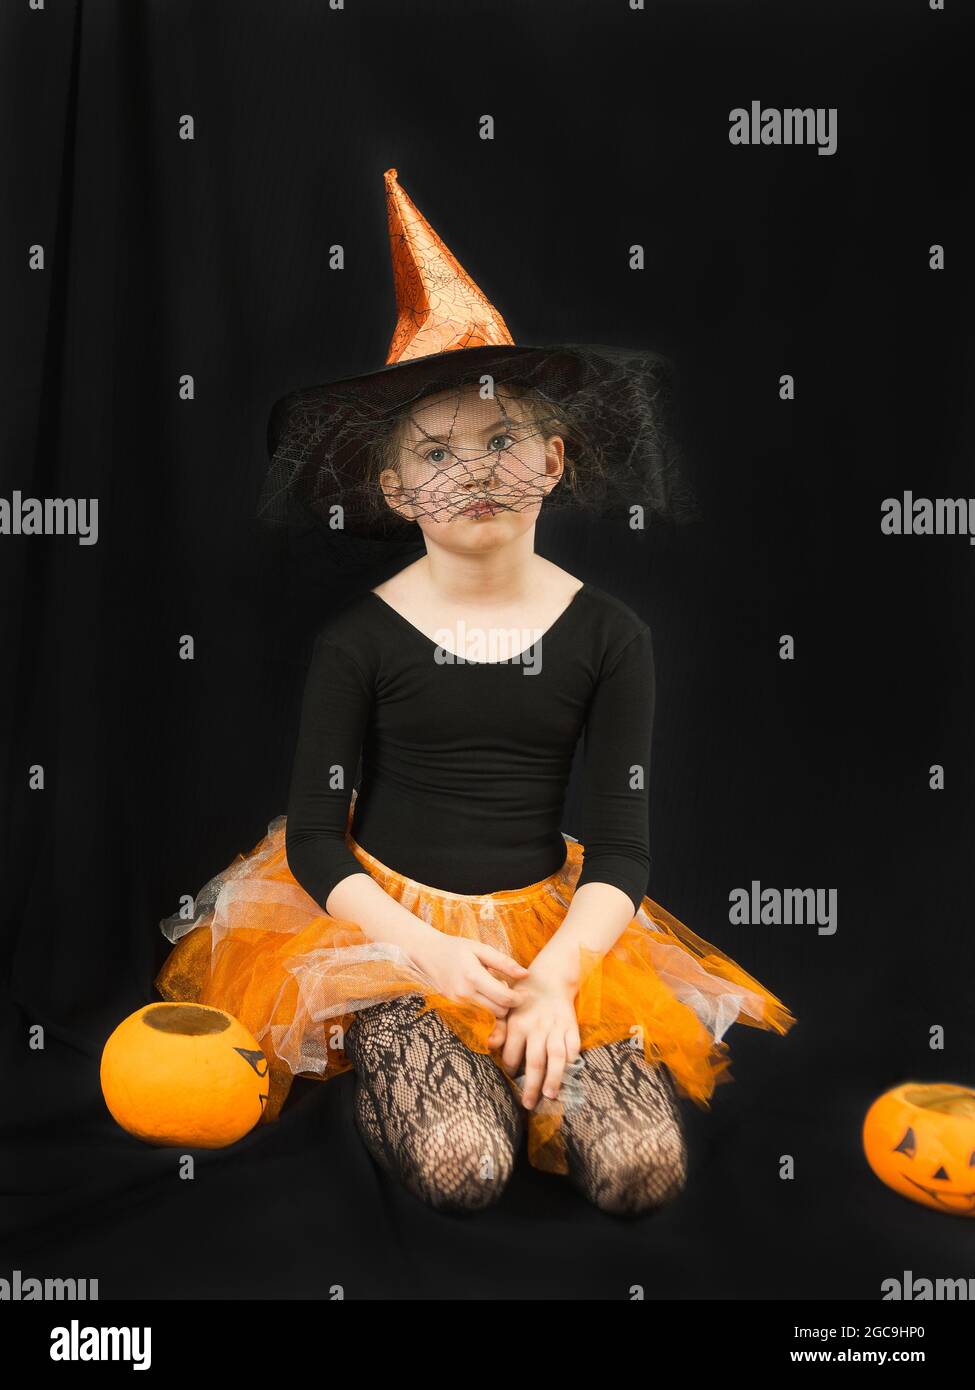 Une fille dans un costume de sorcière - un chapeau avec une toile d'araignée et une jupe orange - se repose avec lassitude sur un fond noir. À côté de lui est un seau-citrouille pour la collecte Banque D'Images